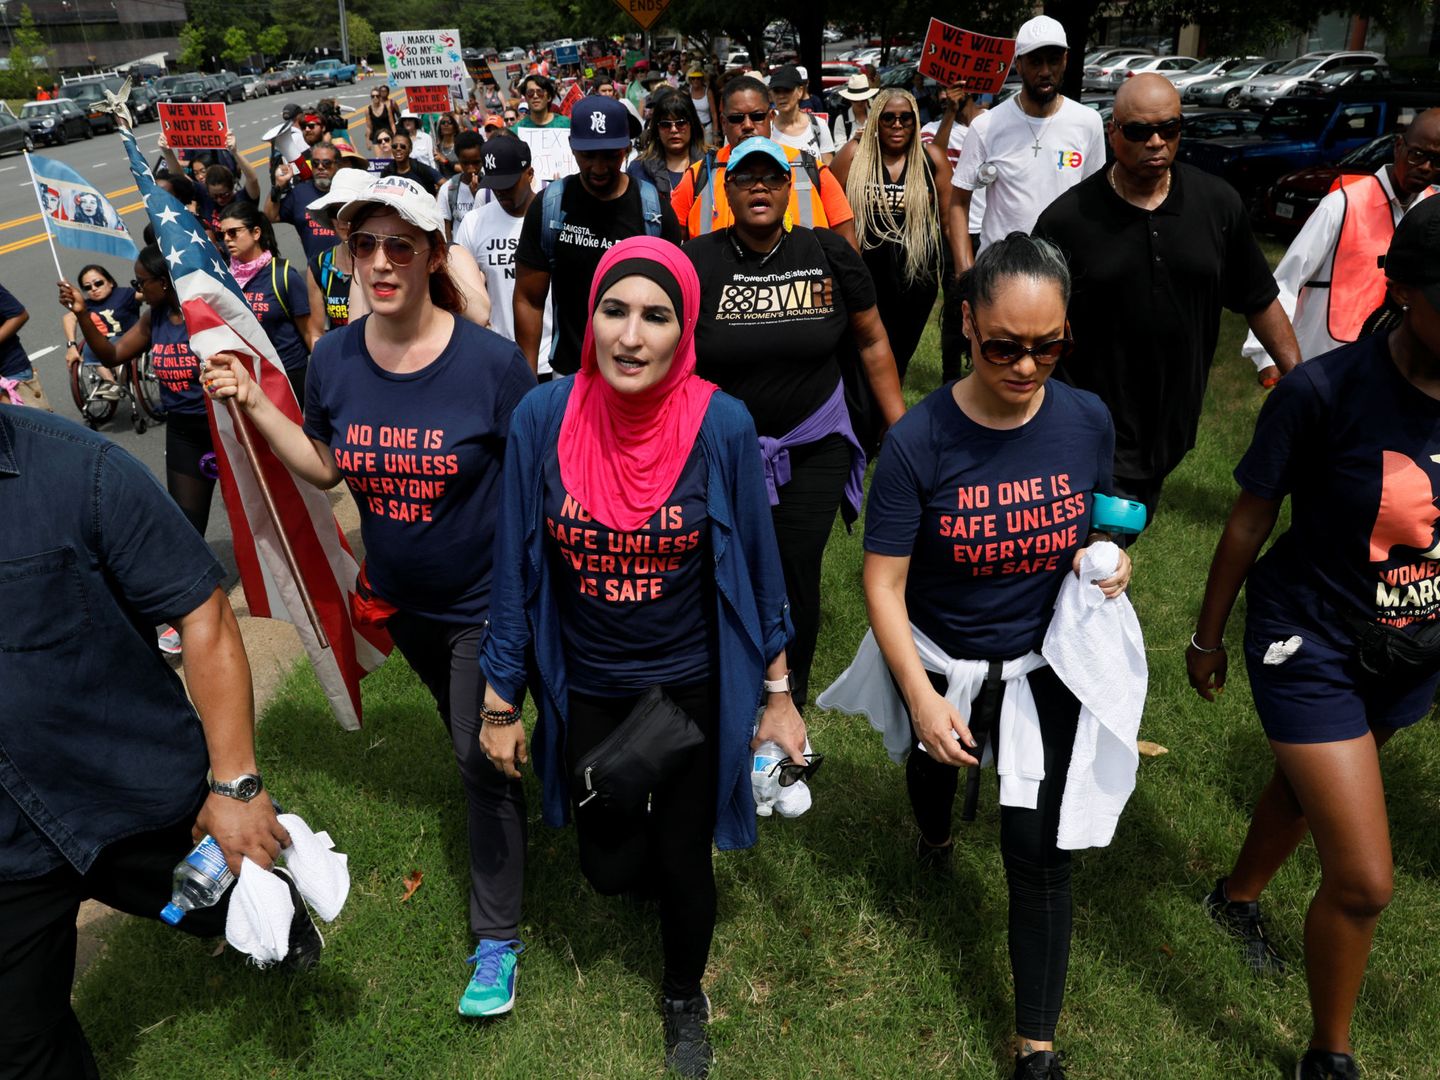 Marcha de protesta contra los tiroteos y la legislación sobre armas desde la sede de la NRA, en Fairfax, Virginia. (Reuters)